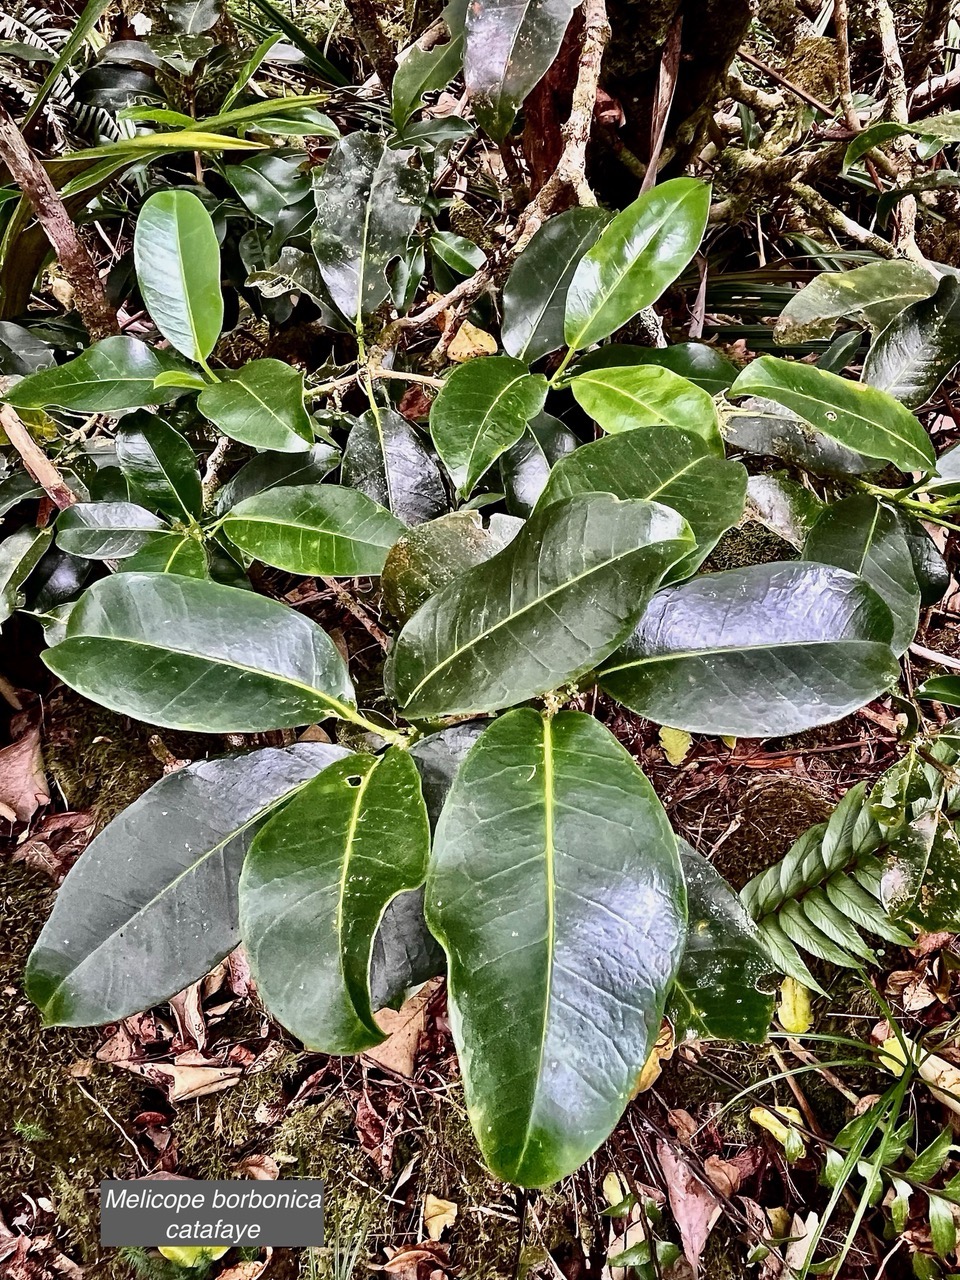 Melicope borbonica .catafaye .petit bois de catafaye .rutaceae.endémique Réunion..jpeg